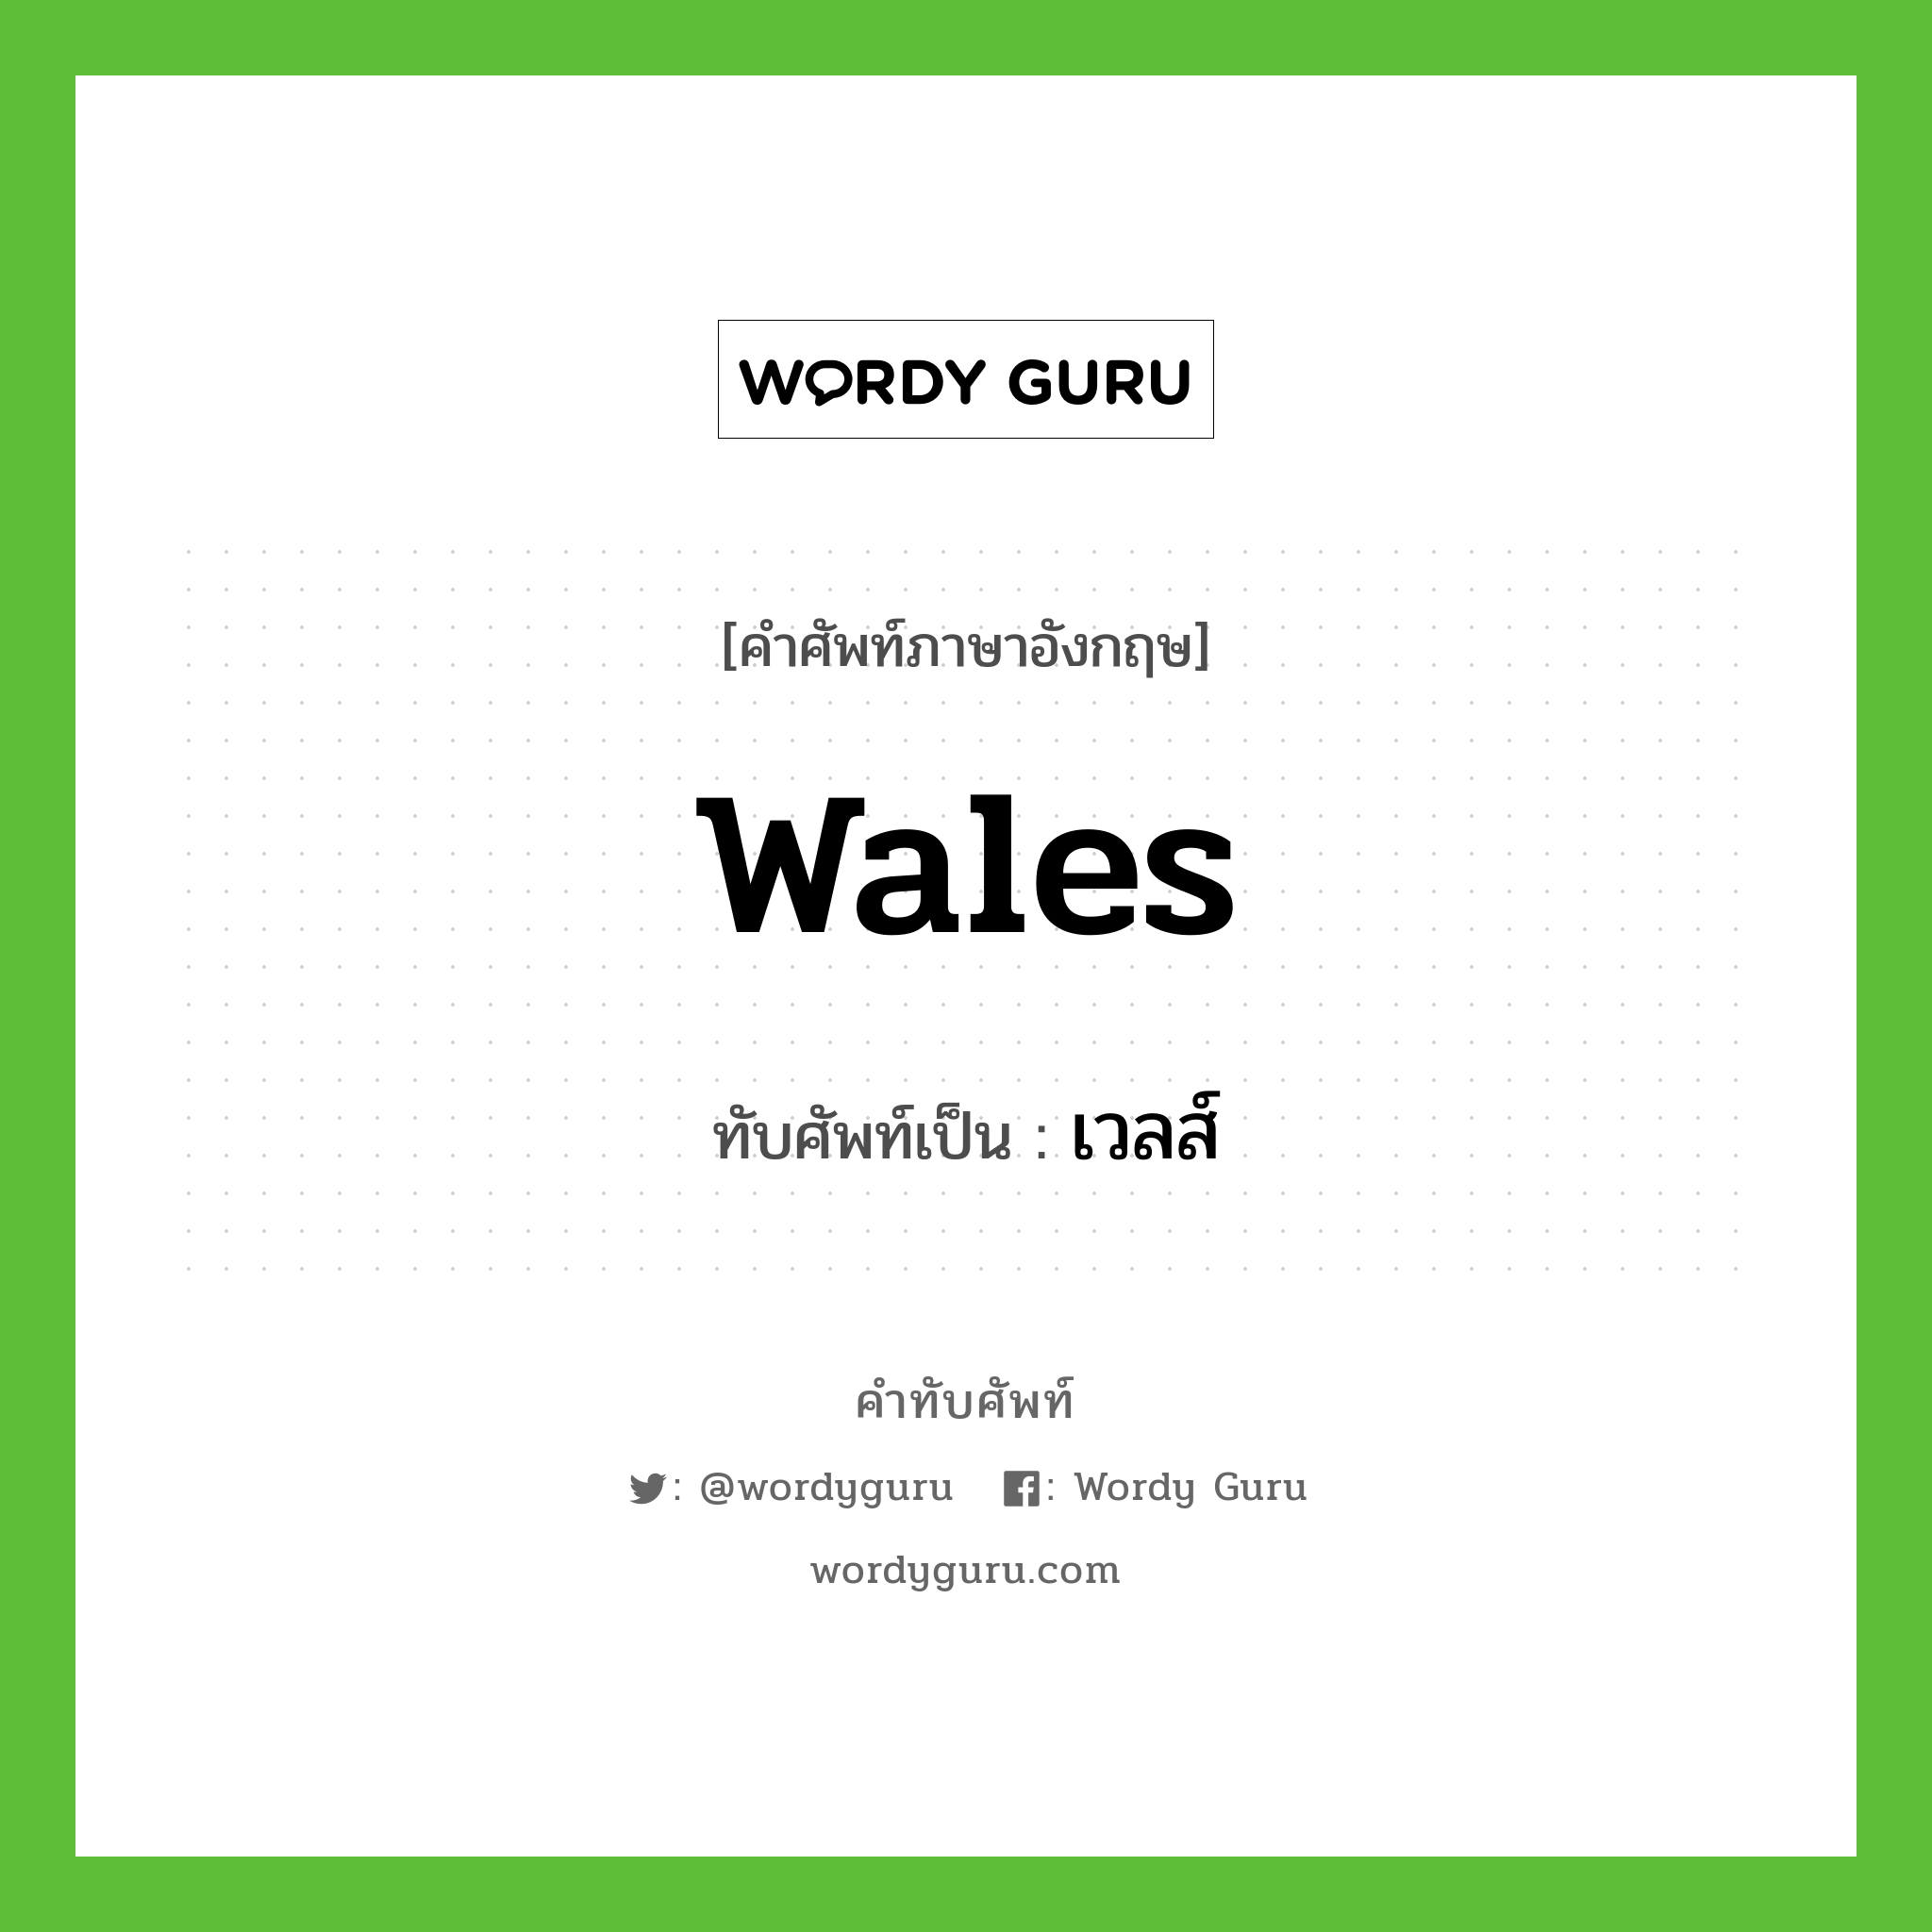 Wales เขียนเป็นคำไทยว่าอะไร?, คำศัพท์ภาษาอังกฤษ Wales ทับศัพท์เป็น เวลส์